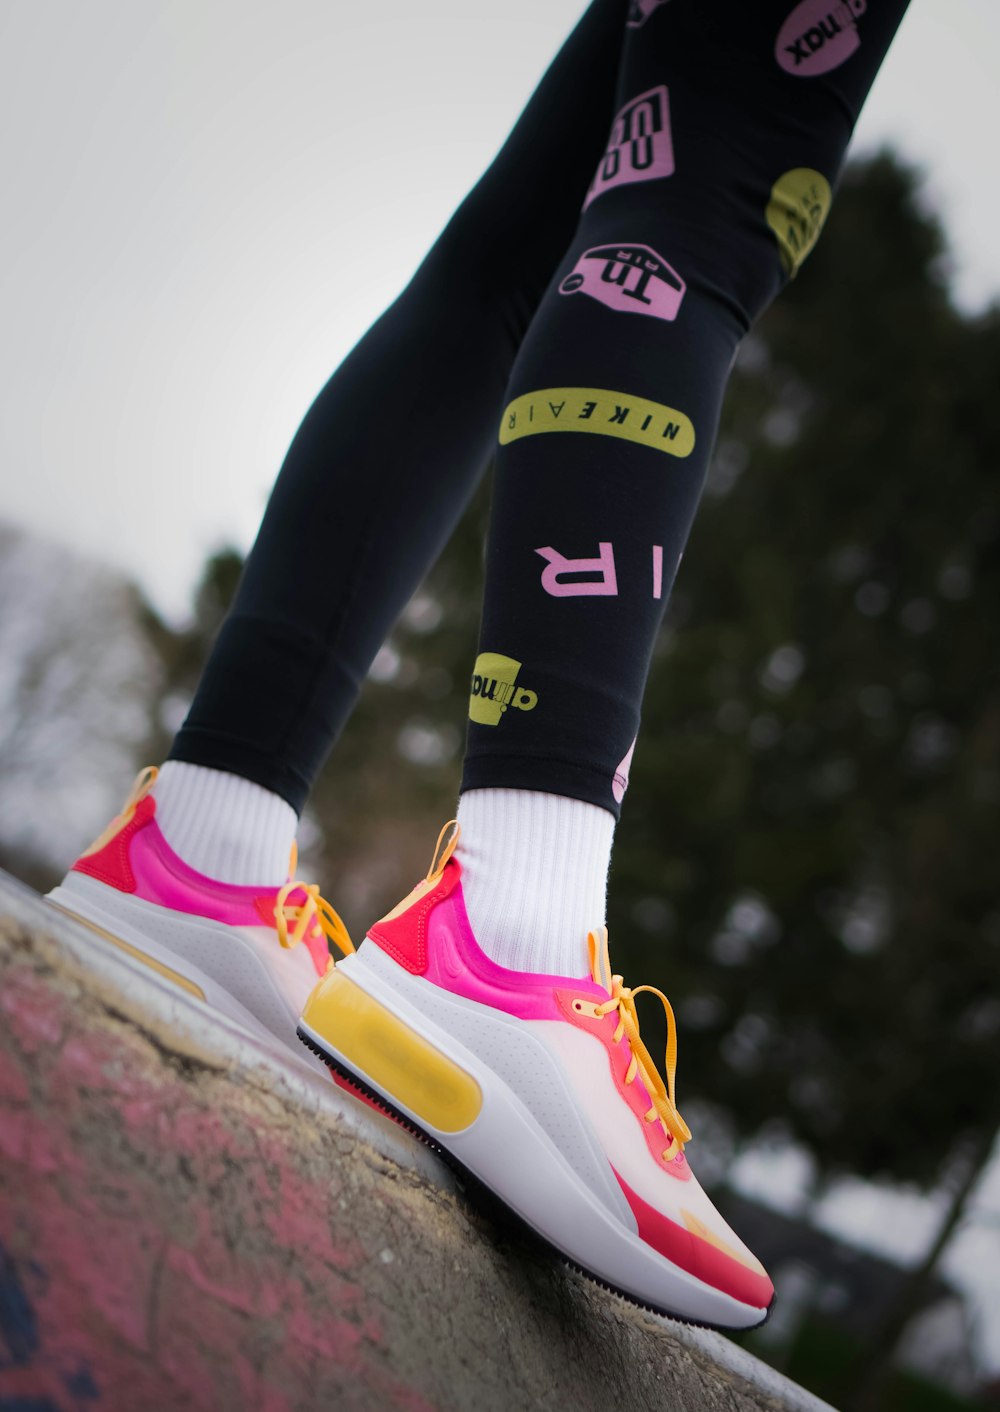 Foto Persona con pantalones negros y zapatillas nike blancas rosas y  amarillas – Imagen Deutschland gratis en Unsplash